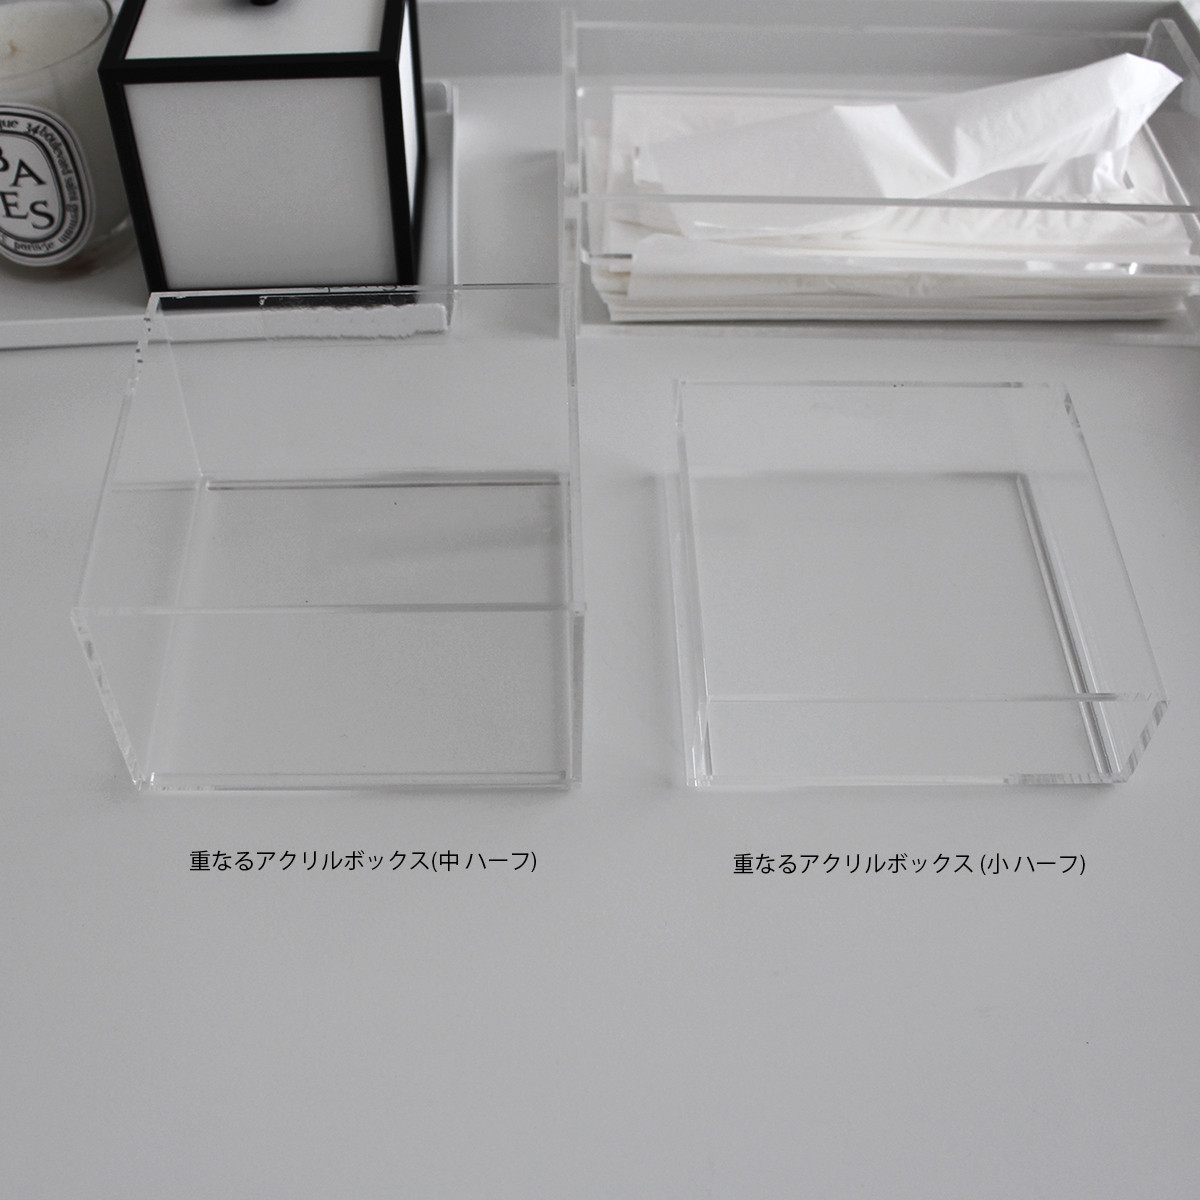 日本限定モデル】 無印良品アクセサリーケース2個 透明コスメボックス 中